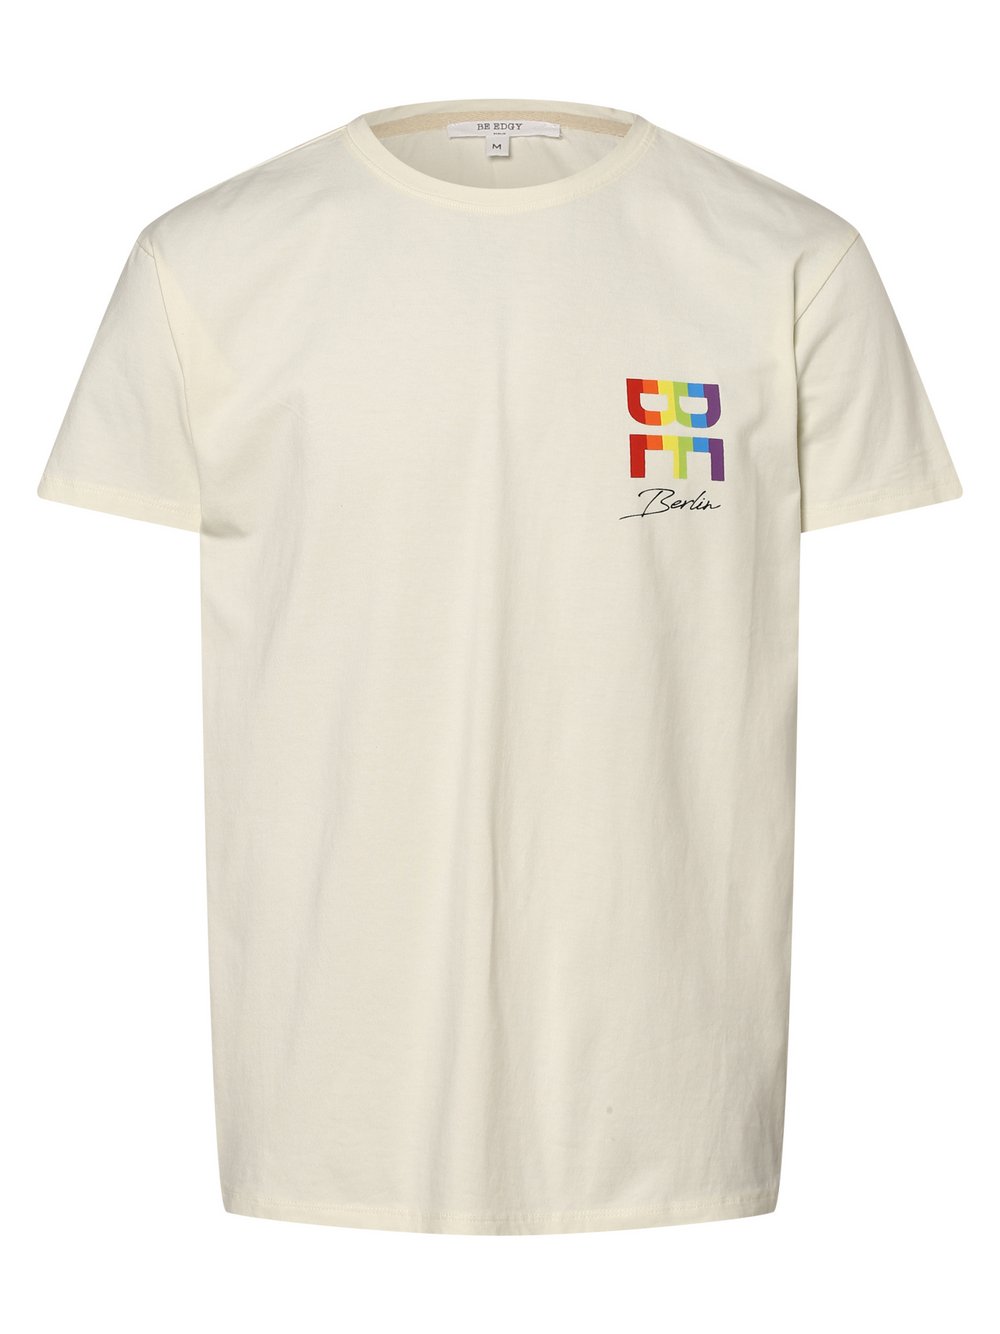 BE EDGY - T-shirt męski, beżowy|żółty|biały